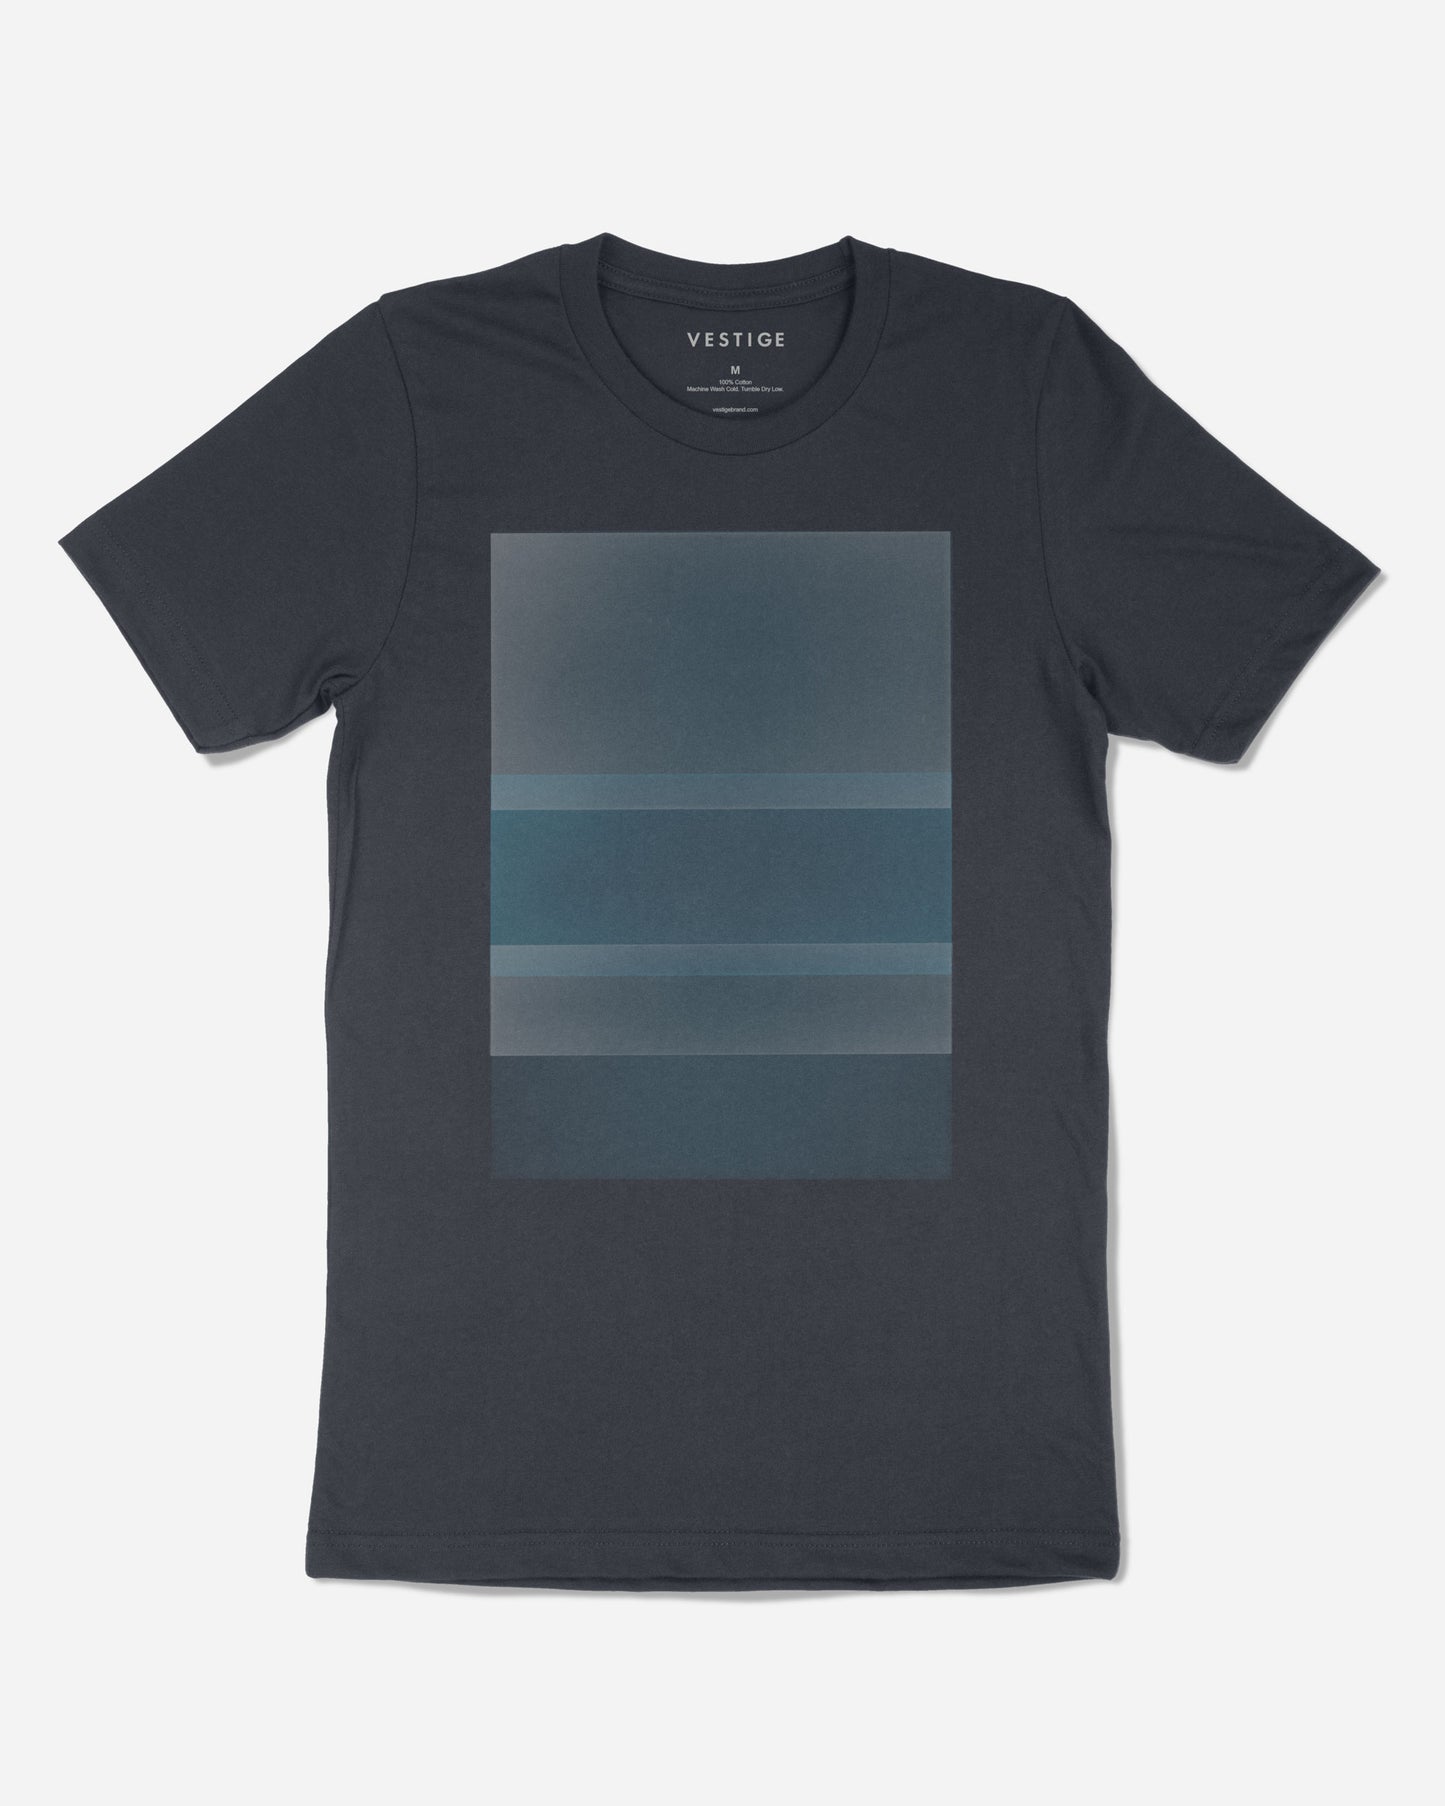 Graphic T-Shirt, Carbon